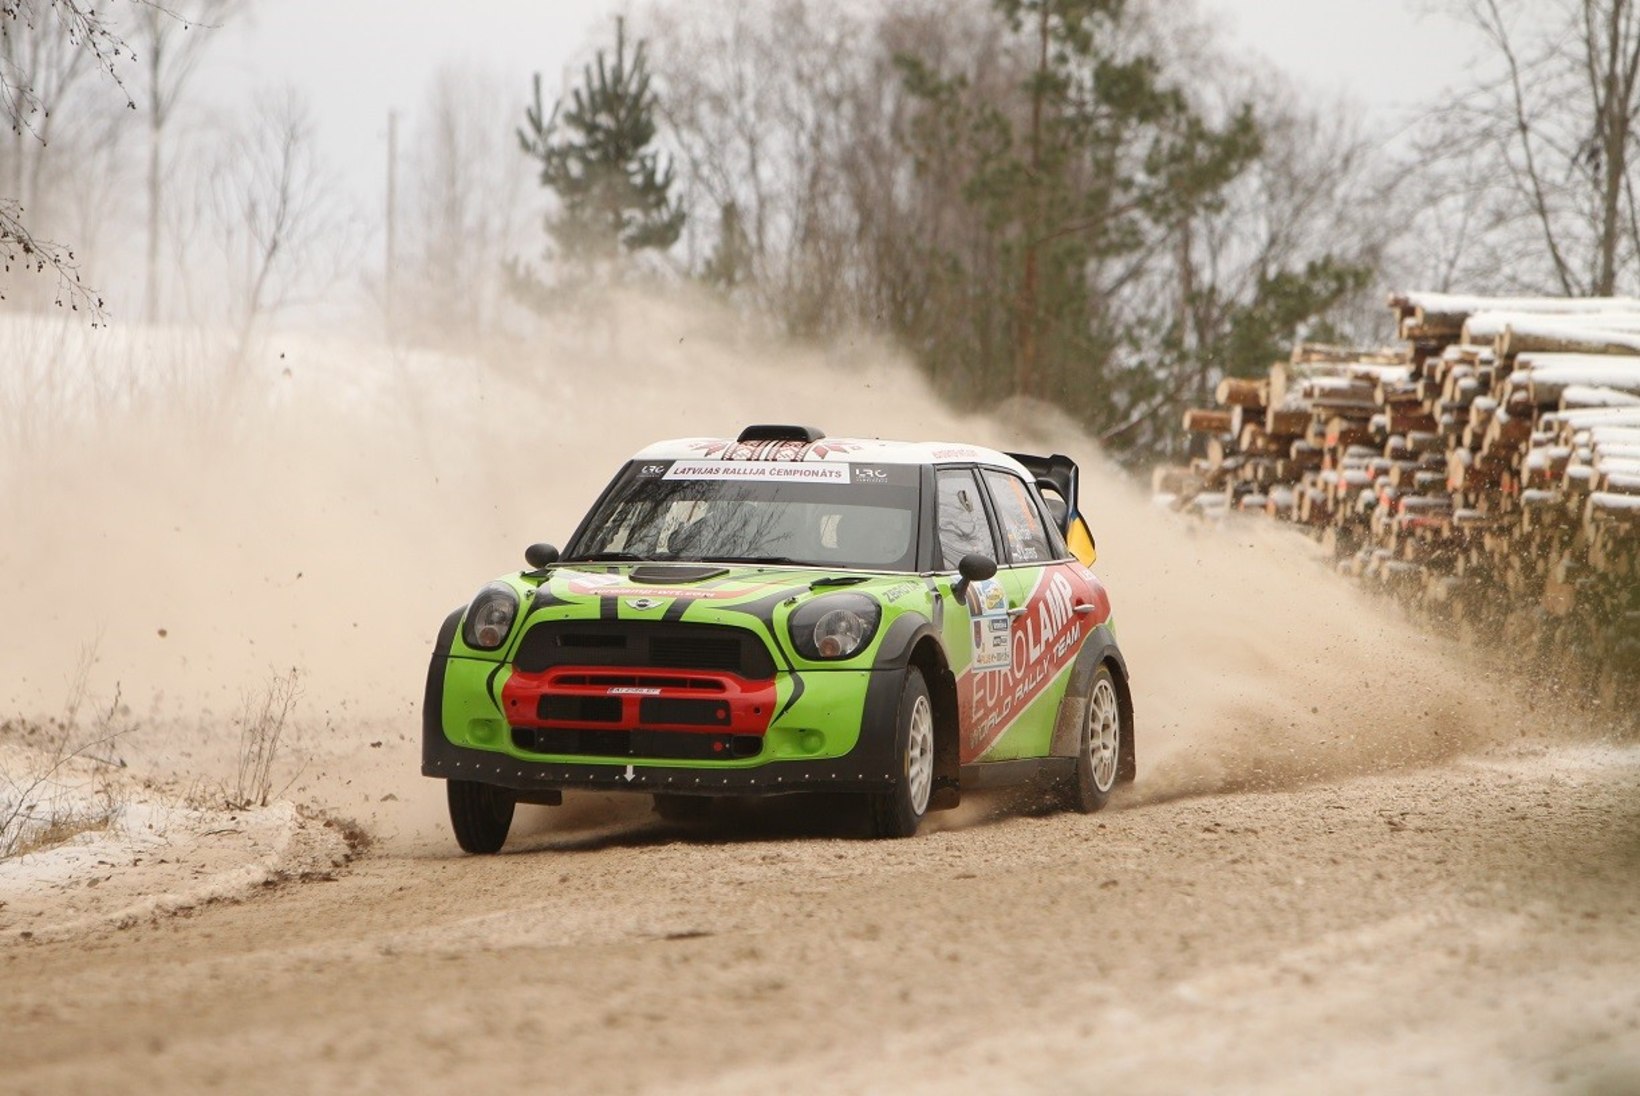 Eesti meistrivõistluste etapil on taas stardis üks WRC auto, noorte hulgas näitab oskusi Petter Solbergi poeg